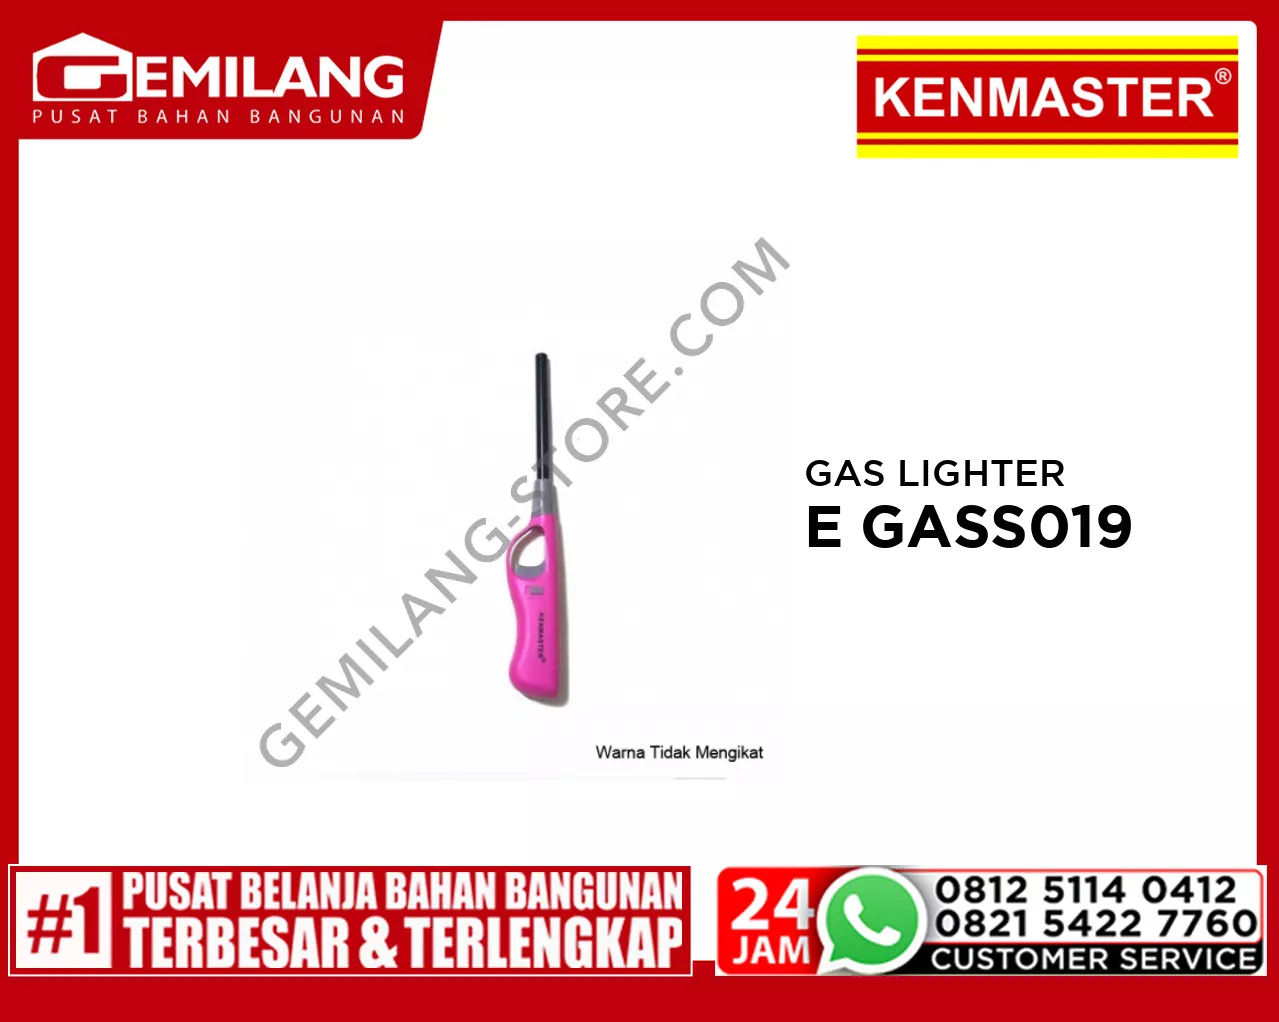 KENMASTER GAS LIGHTER E GASS019